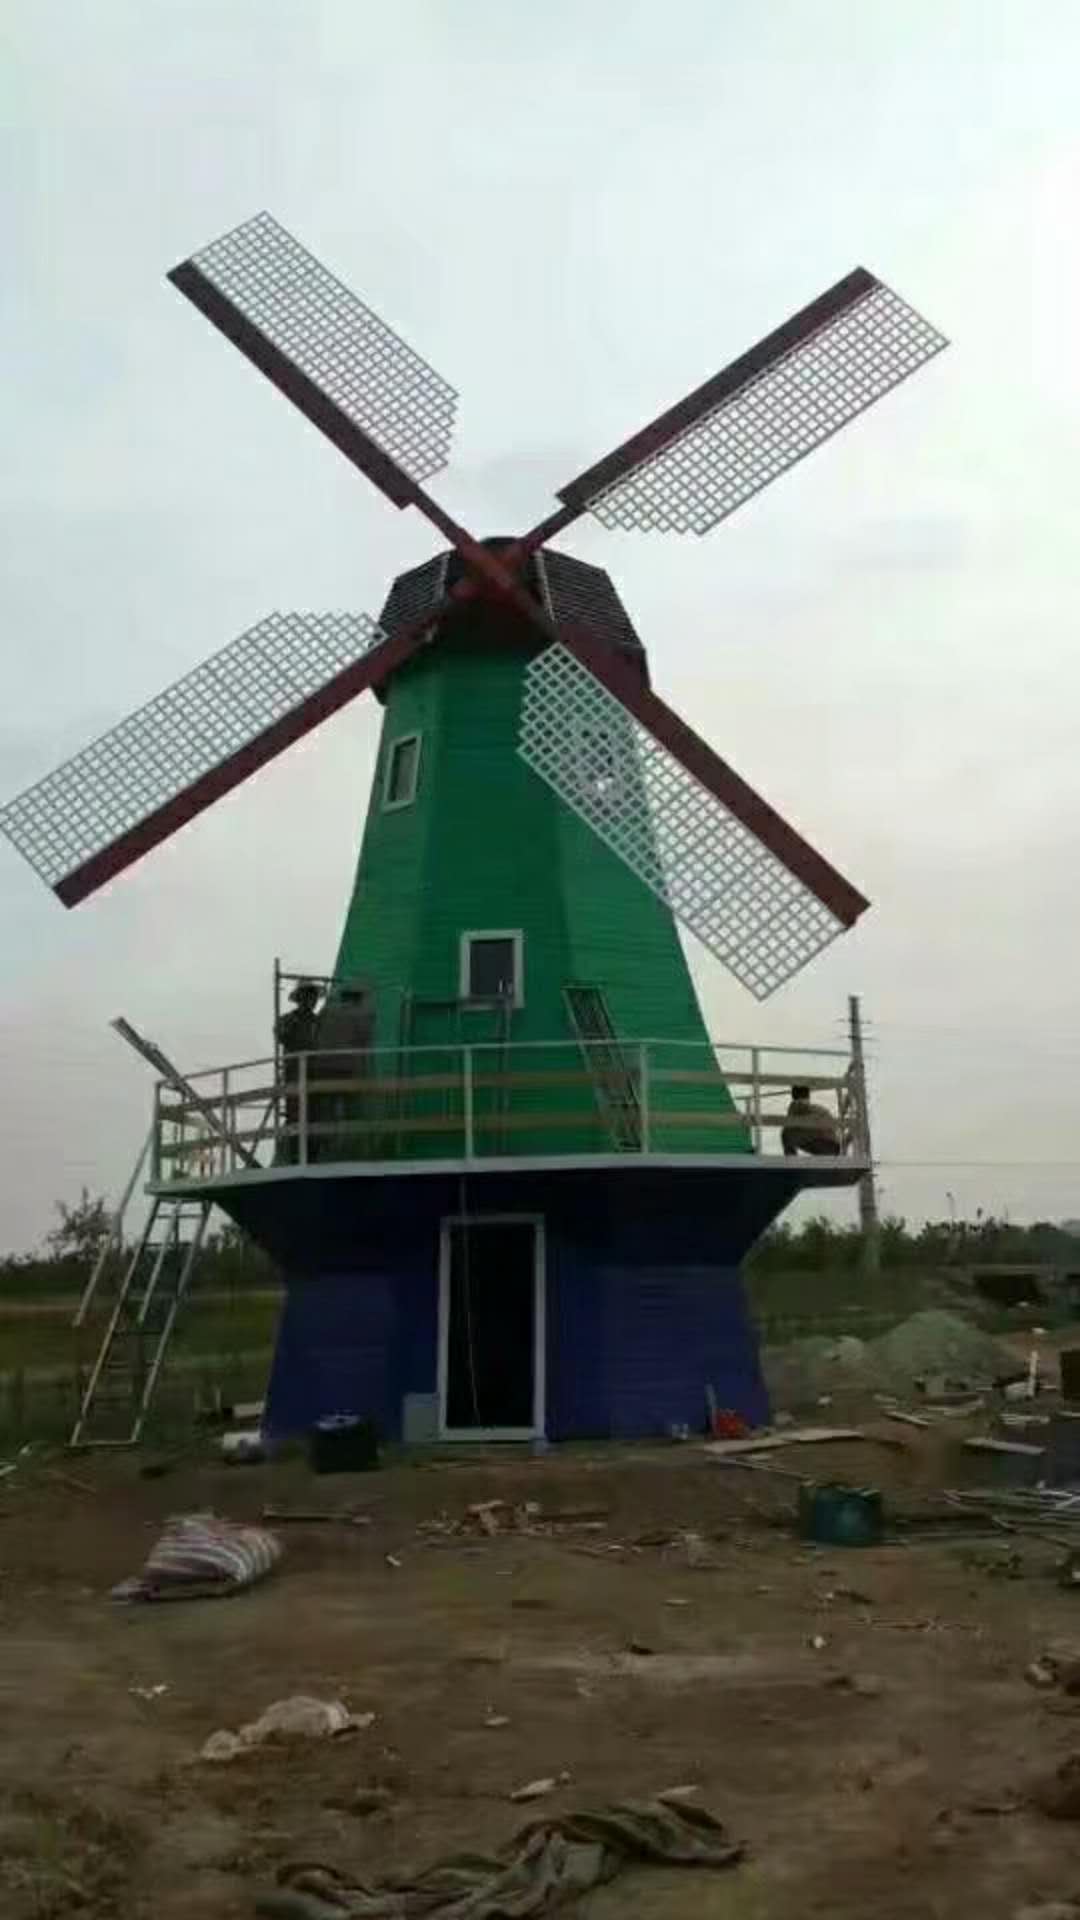 陕西西安荷兰风车防腐木风车厂家